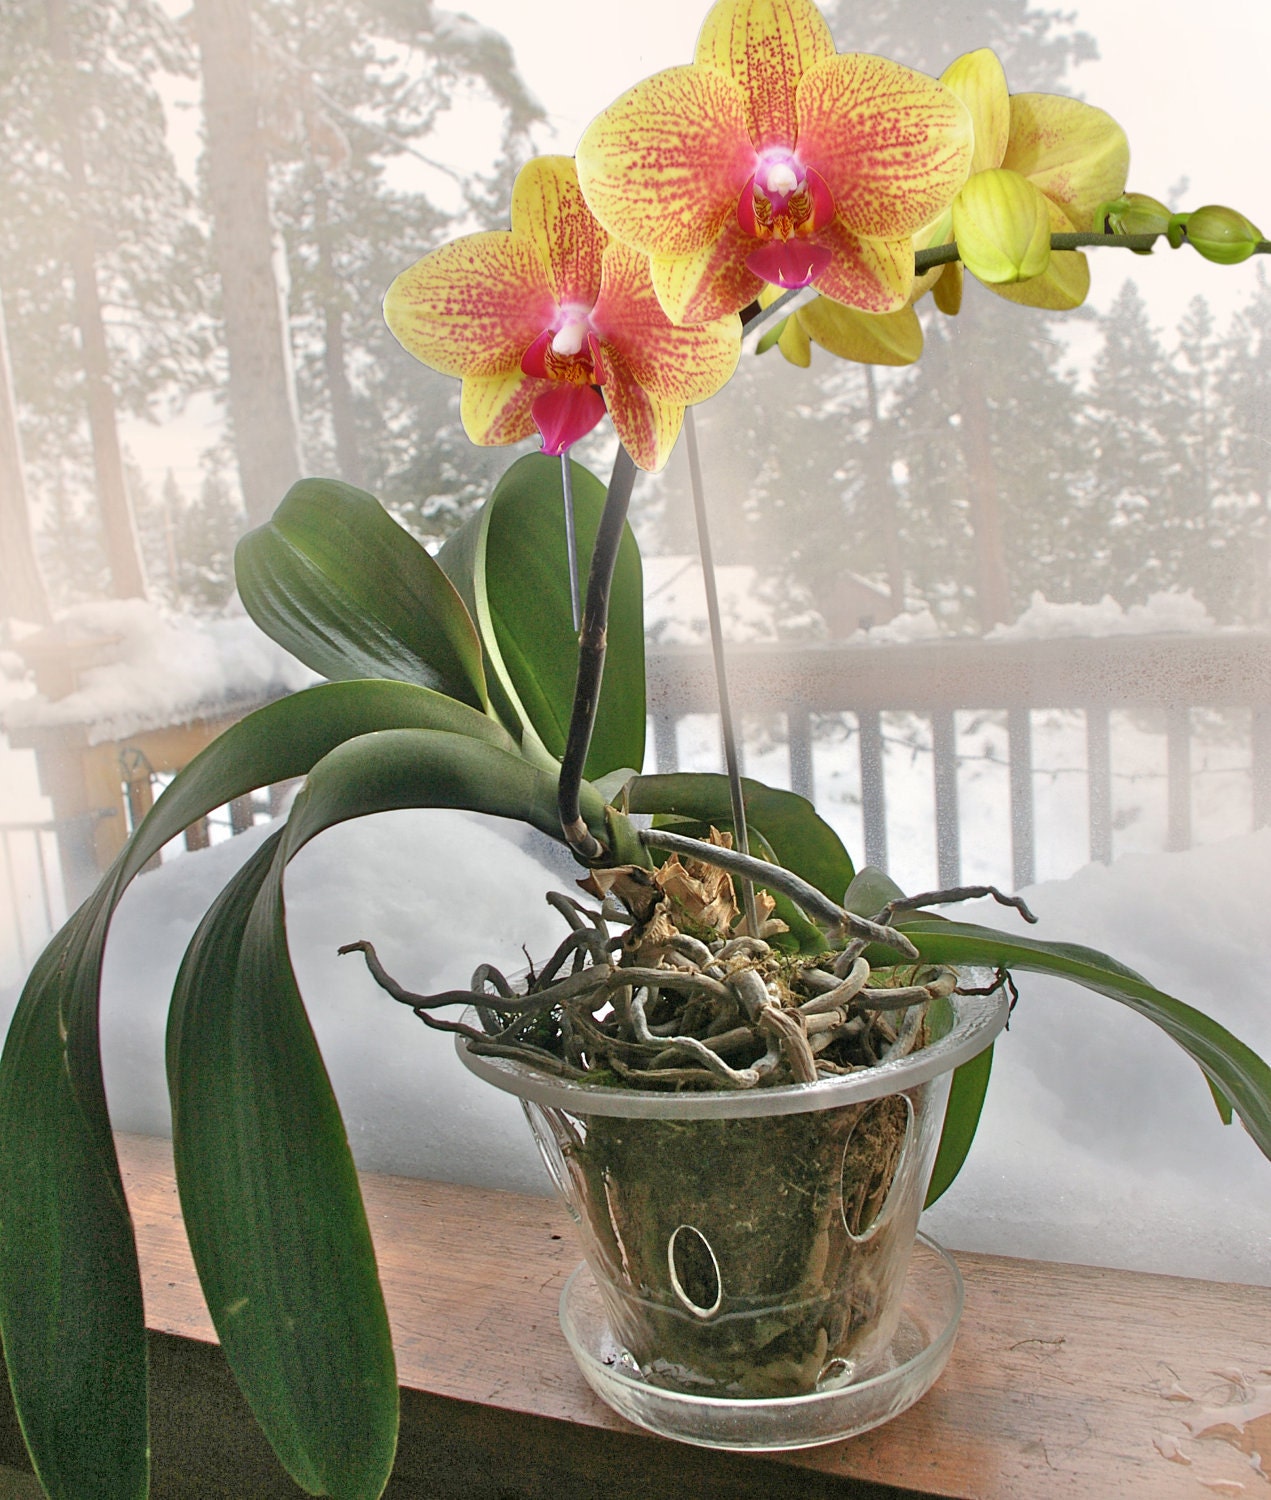 Купить орхидею в горшке авито. Charming Crystal Water Орхидея. Фаленопсис в горшке. Фаленопсис Кристальный водопад. Орхидея не в горшке Тайланд.